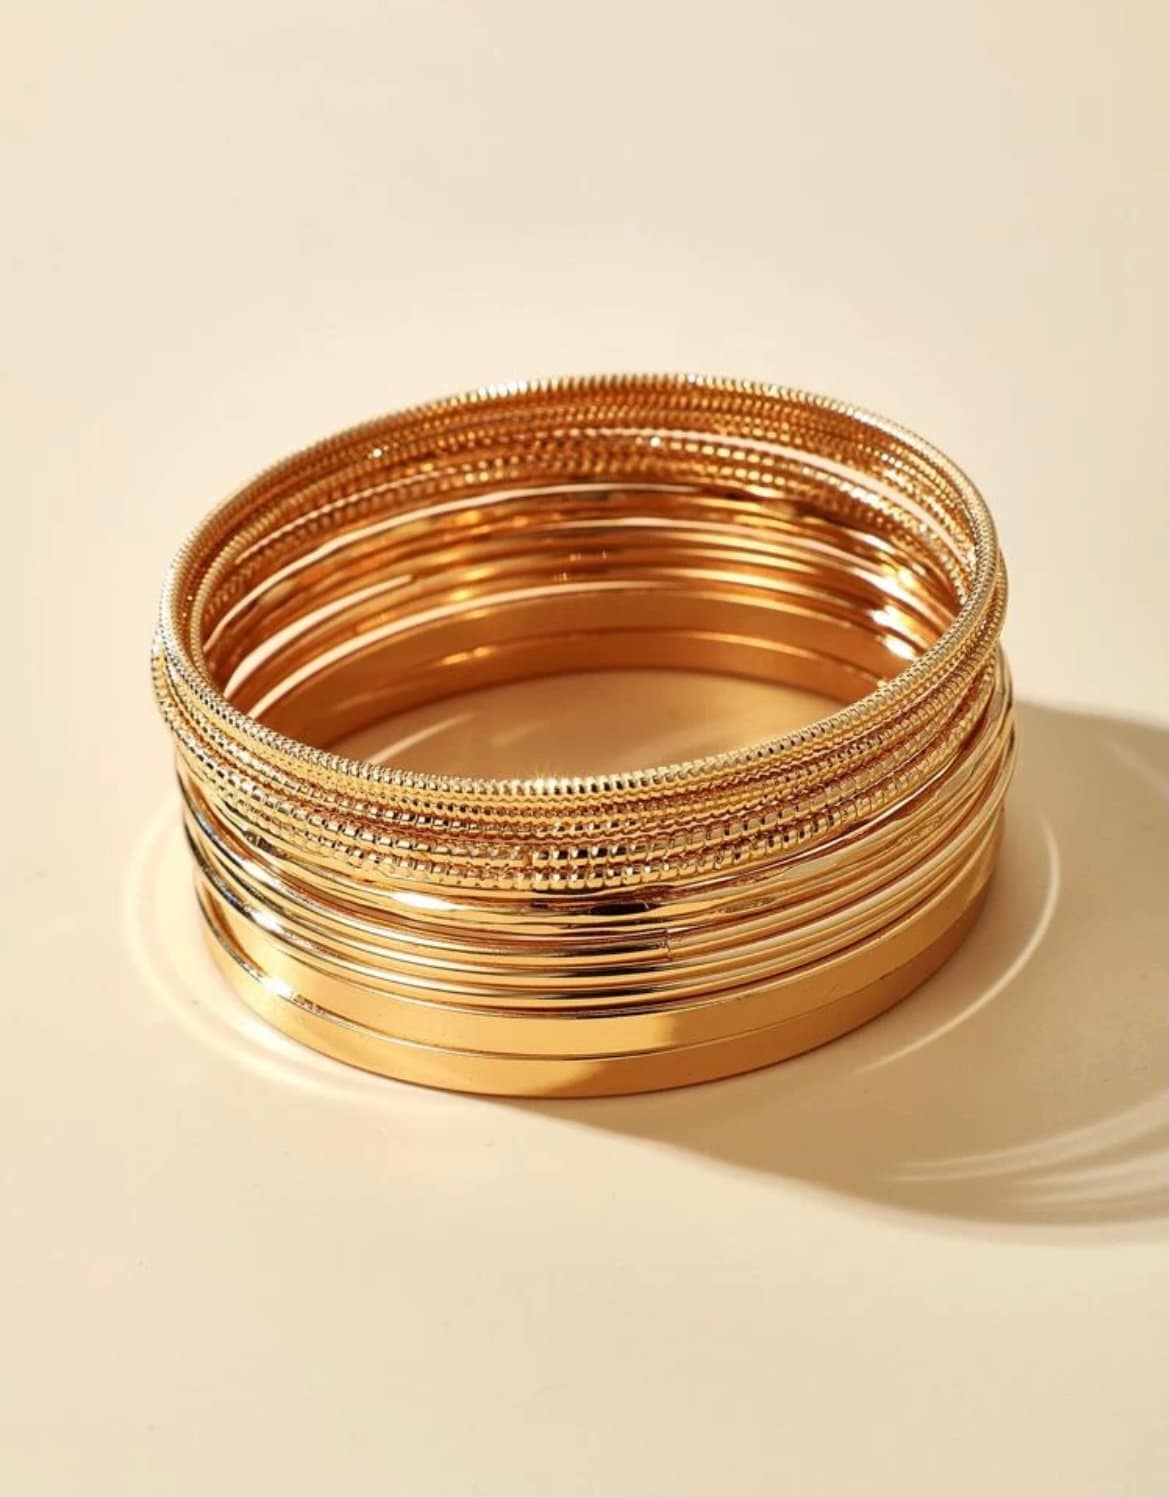 14 Piece Gold Bangle Bracelet Set, Minimalist Gold Bangles, Trendy Bangle Bracelets, Simple Gold Bangle Bracelets, Jewelry Gift Idea